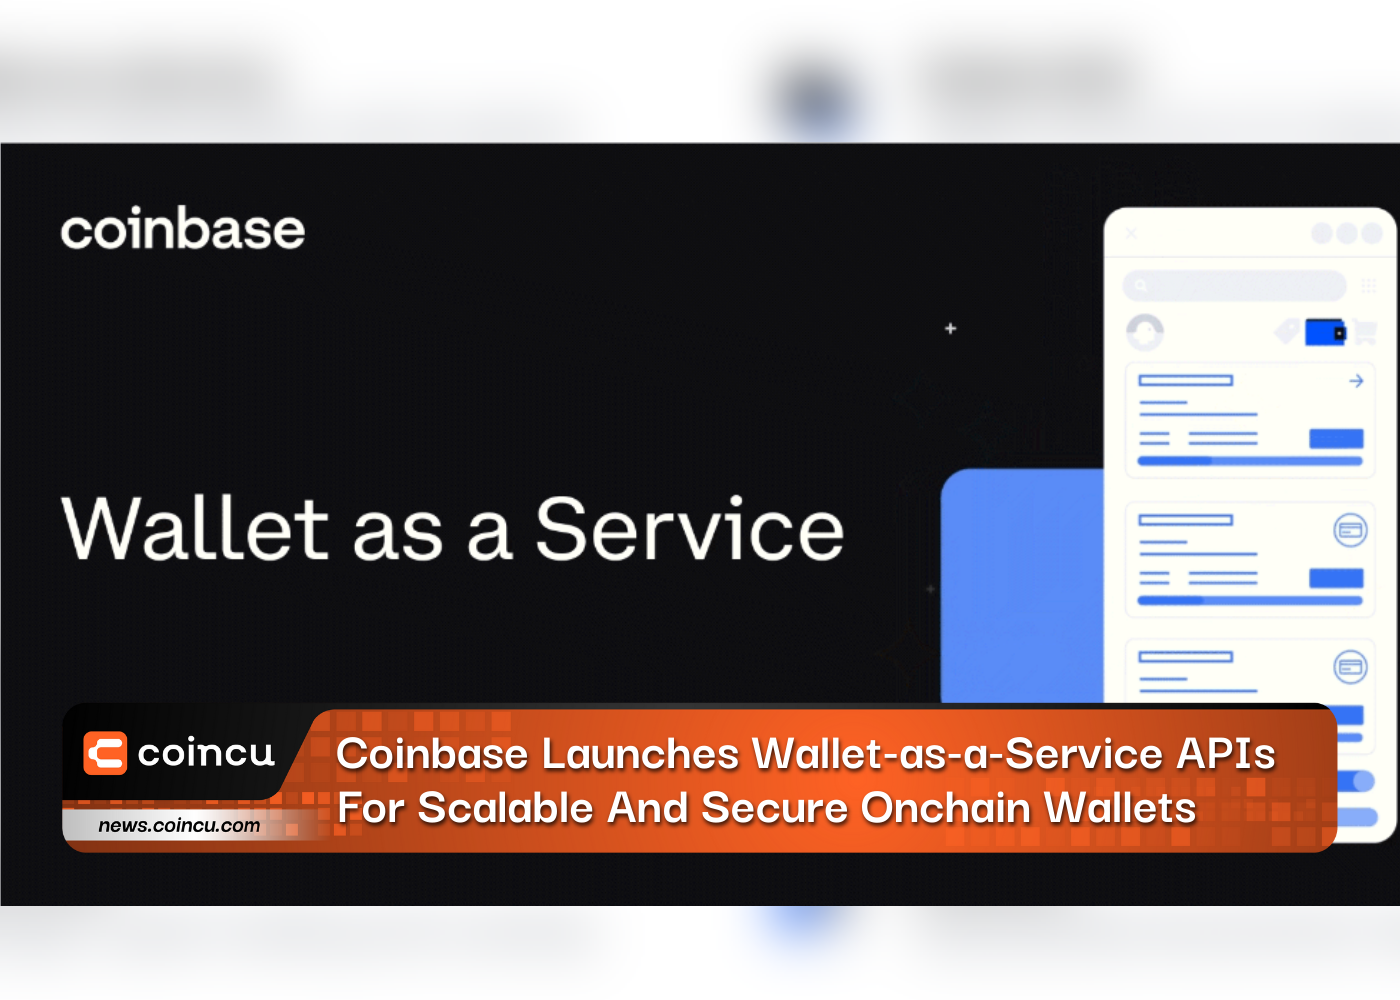 Coinbase lance des API Wallet-as-a-Service pour des portefeuilles Onchain évolutifs et sécurisés